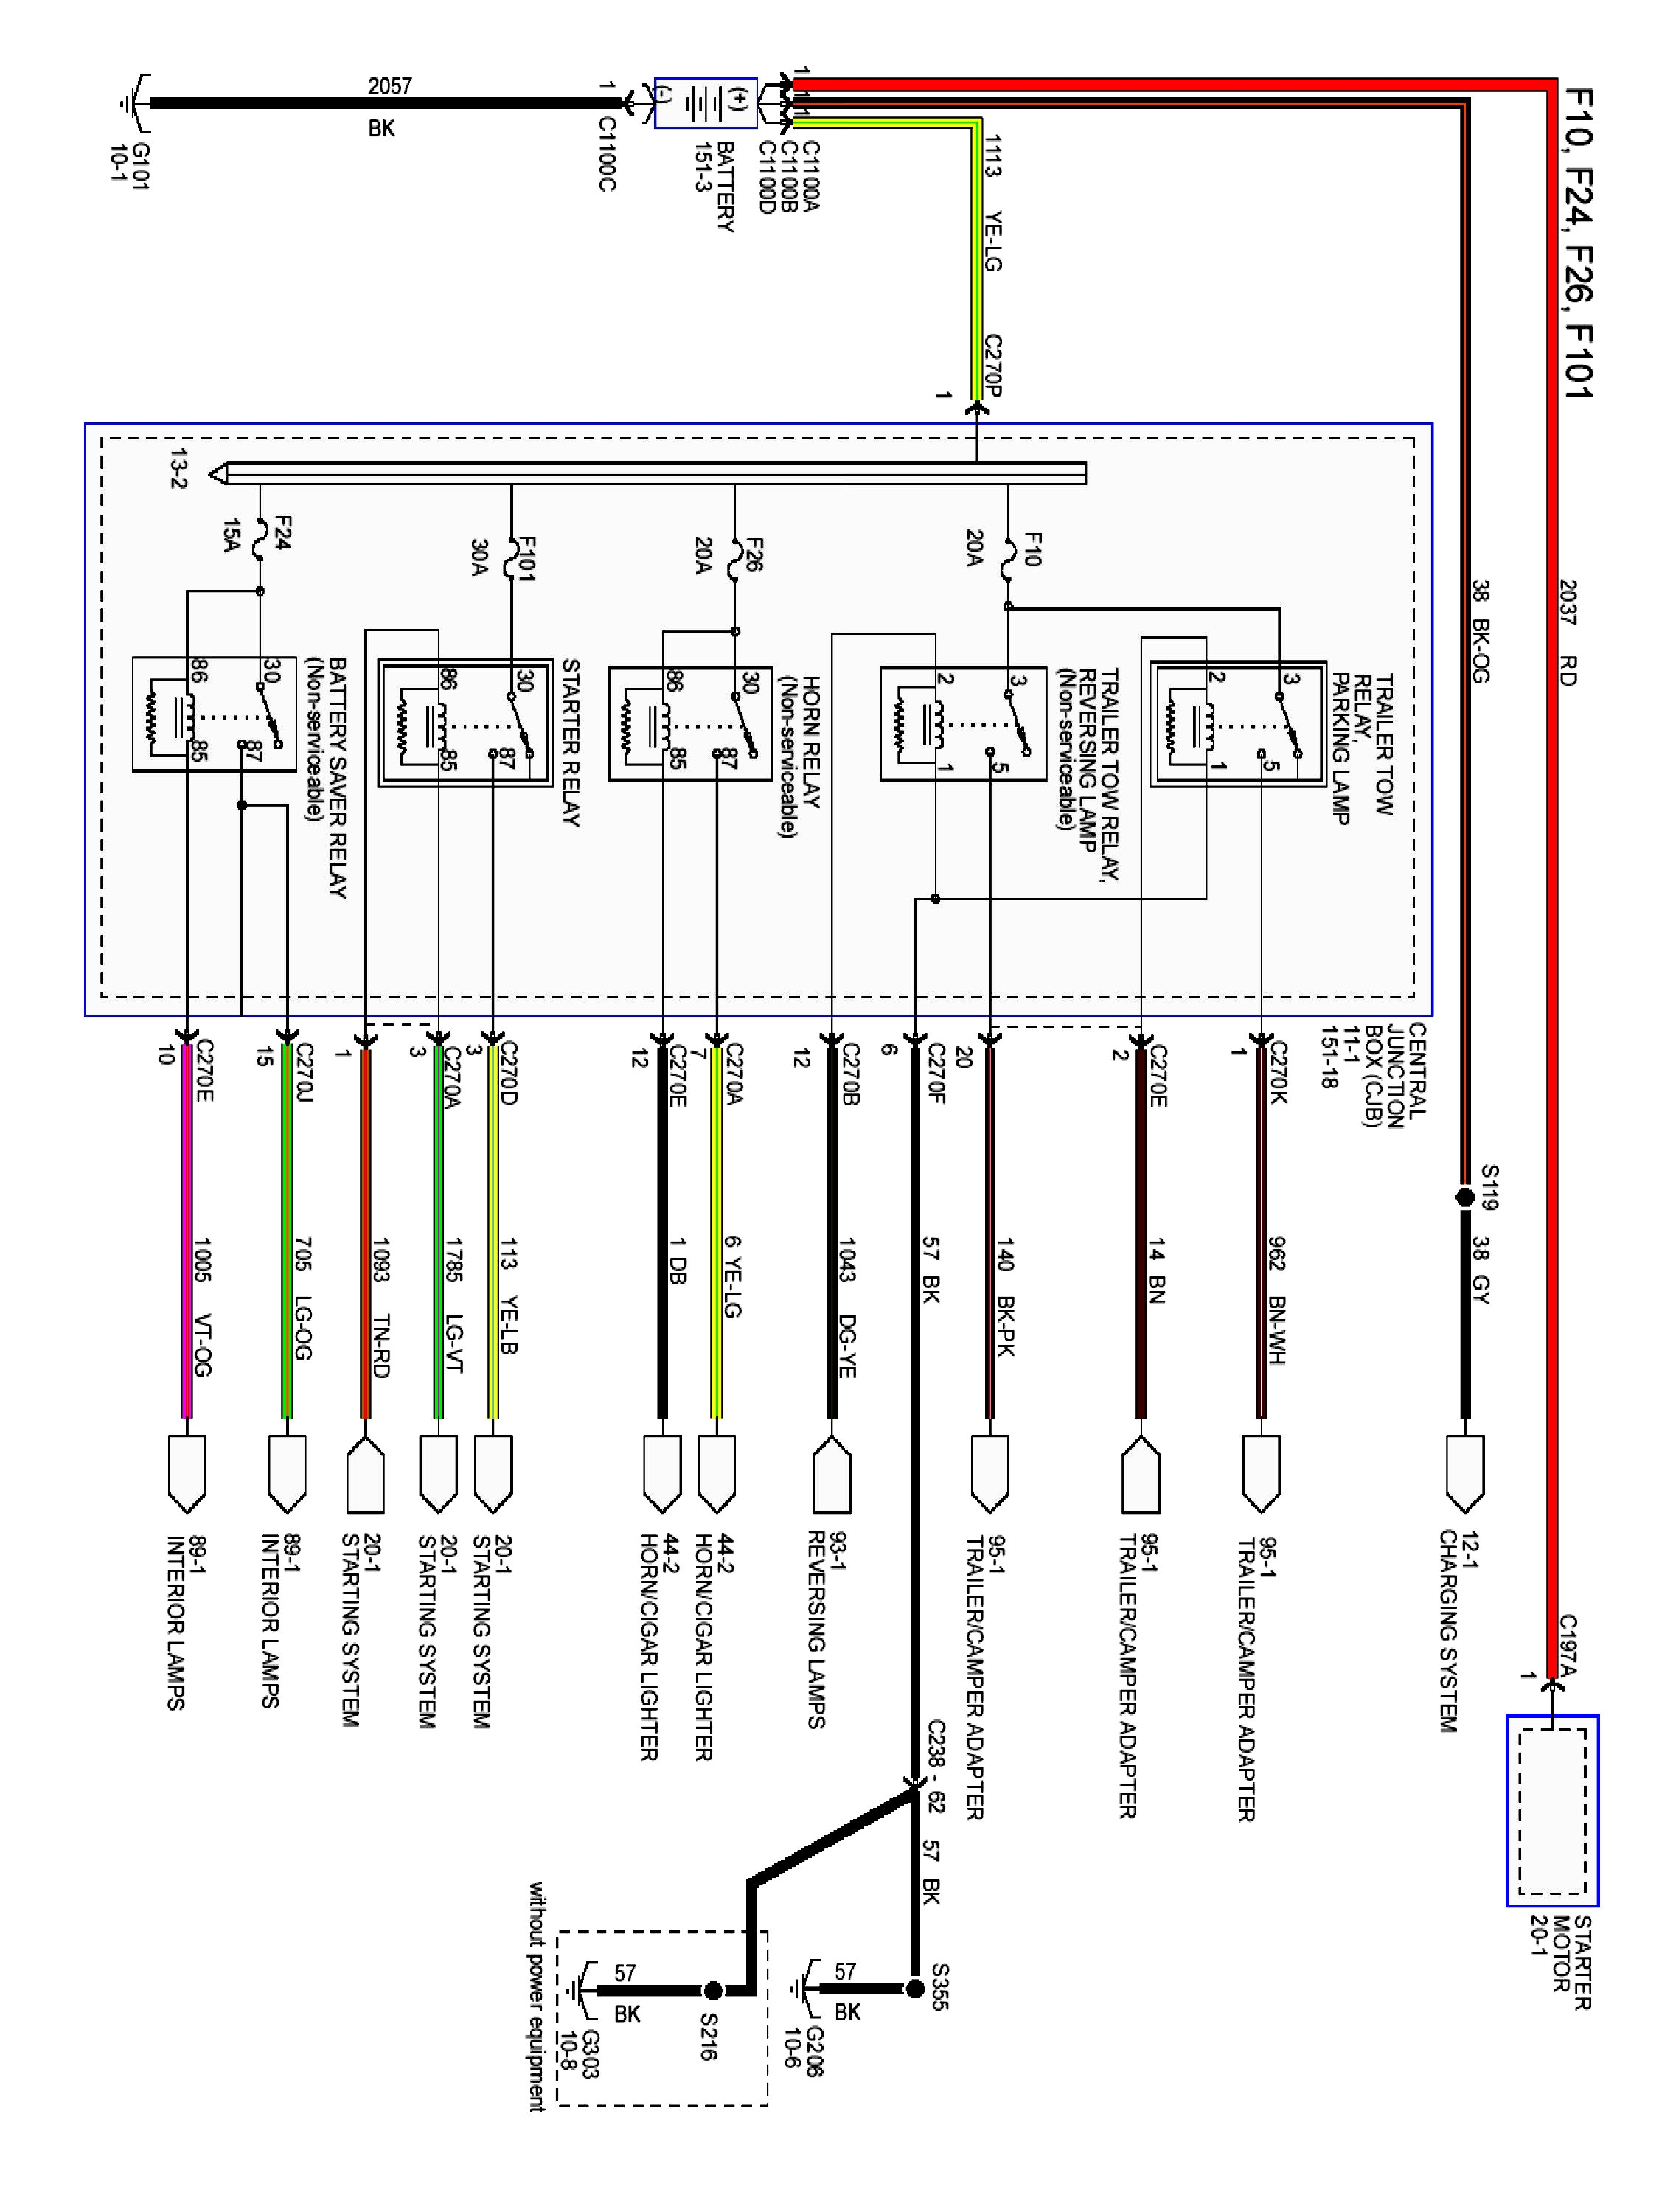 Duraspark Ignition Wiring Diagram | Wiring Diagram - Ford Duraspark Wiring Diagram